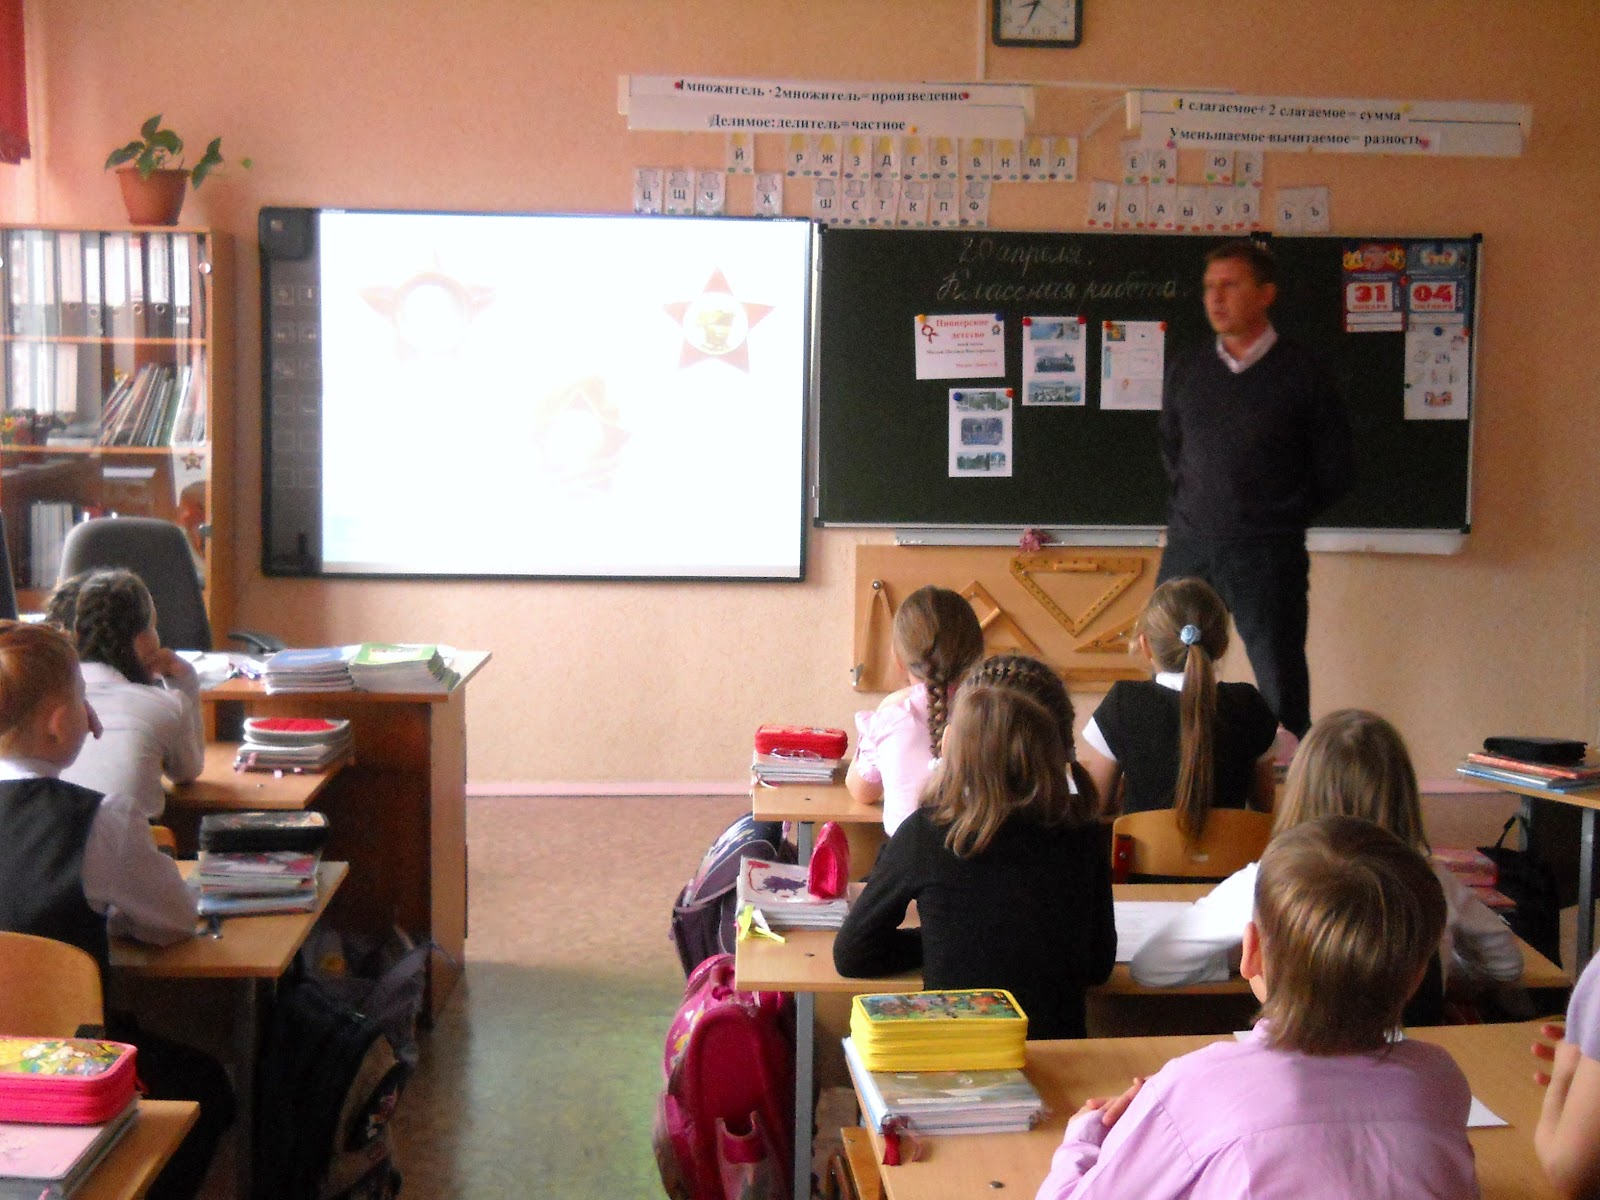 Проекта урок в городе. Классный город Бэшников 97 школа.